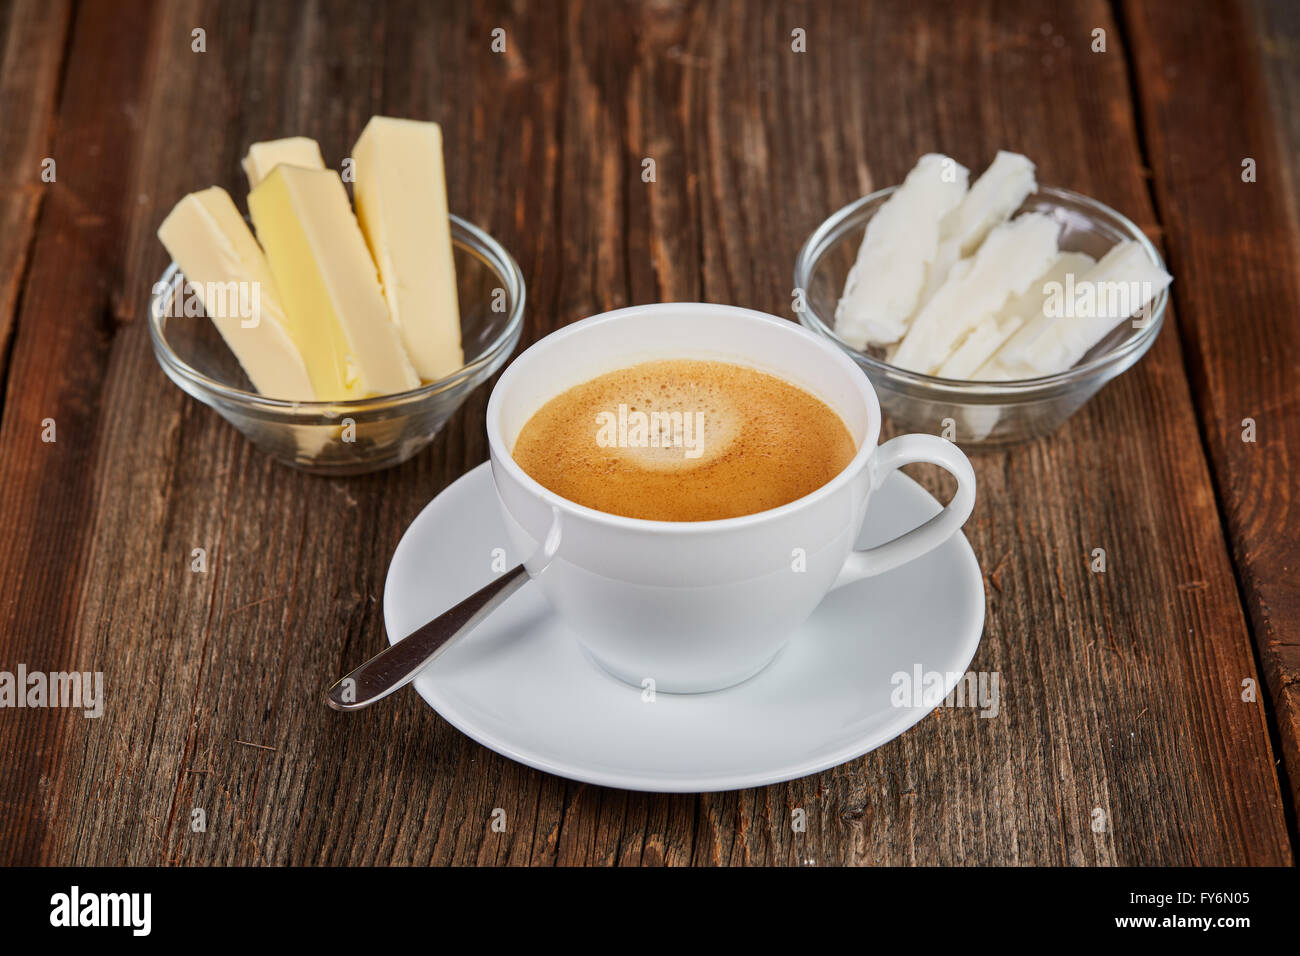 Le café, le beurre et l'huile de noix de coco pour bulletproof café sur une table en bois brun Banque D'Images